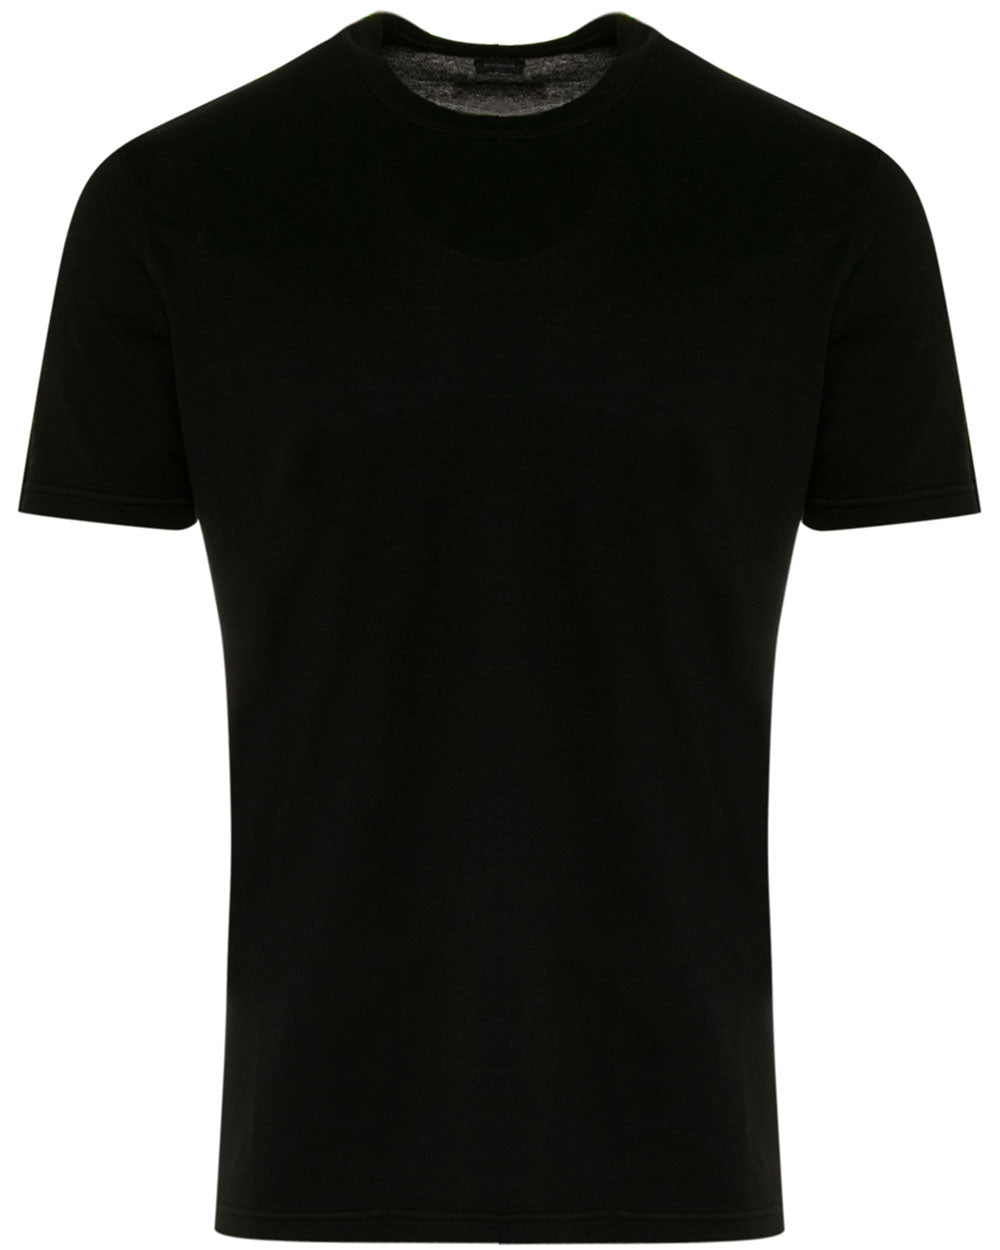 Black Short Sleeve T-Shirt